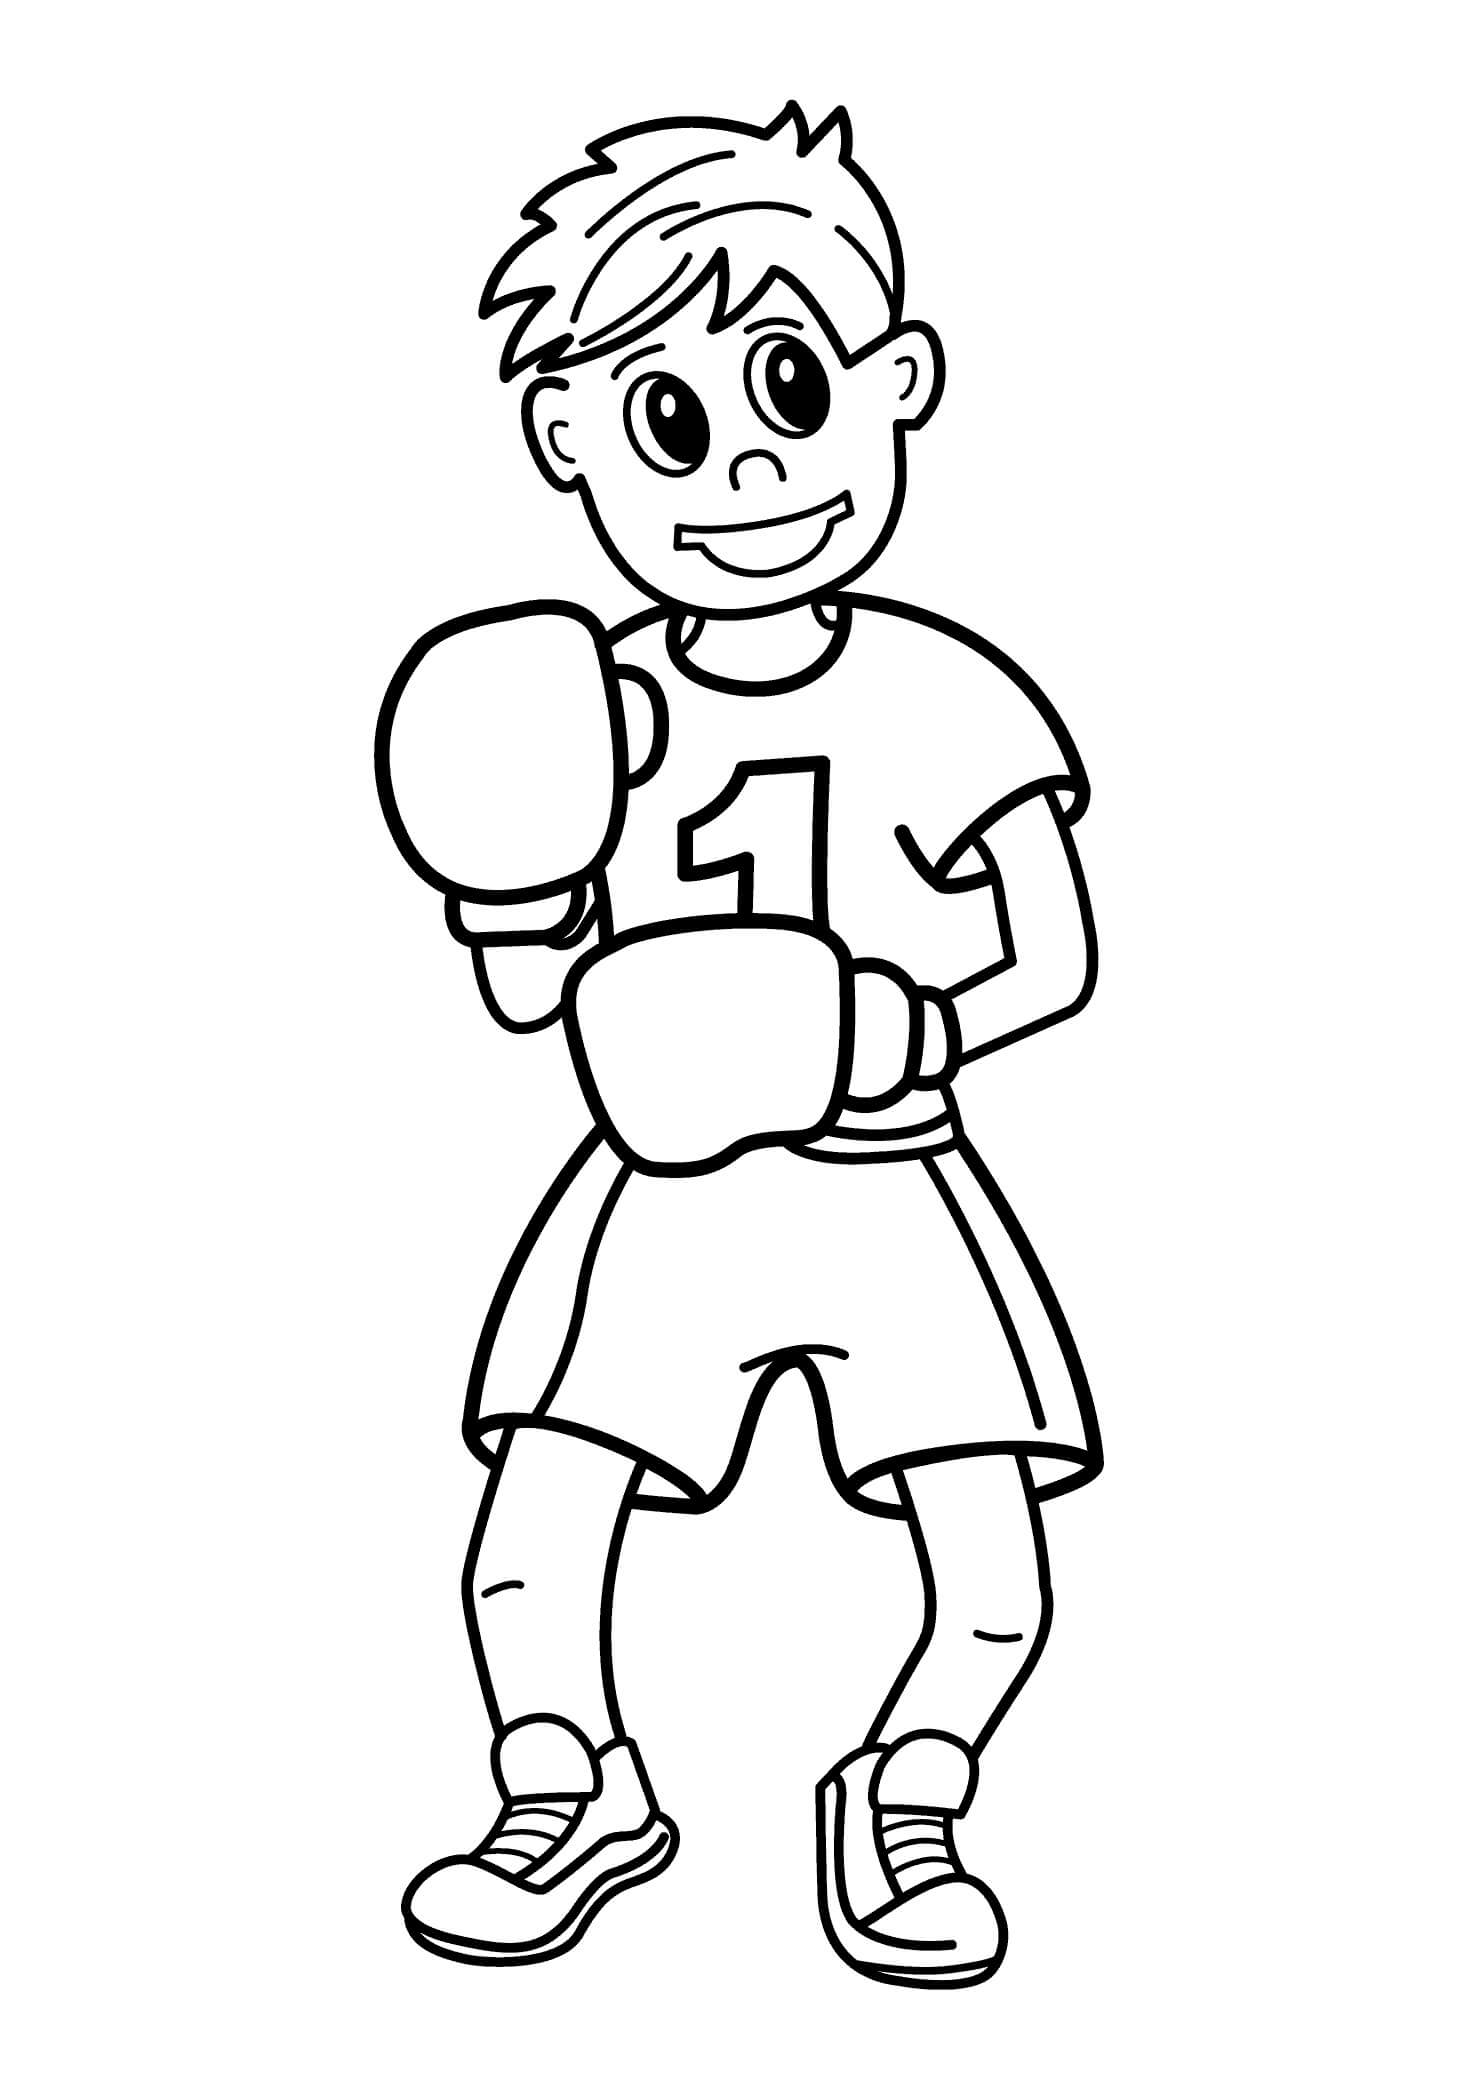 재미있는 권투 소년 coloring page